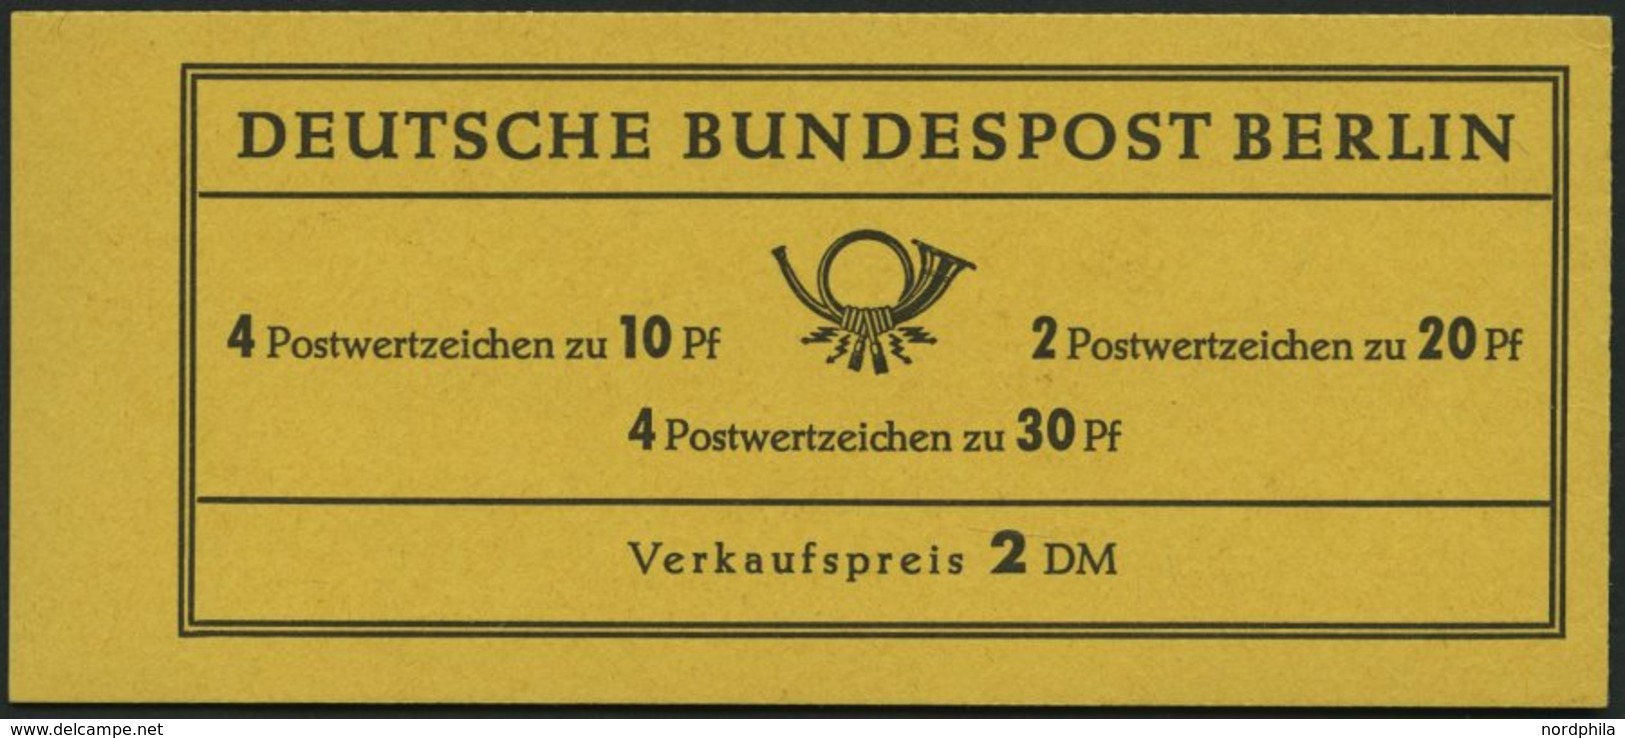 ZUSAMMENDRUCKE MH 5d **, 1966, Markenheftchen Brandenburger Tor, 4. Deckelseite Unbedruckt, Pracht, Mi. 60.- - Zusammendrucke